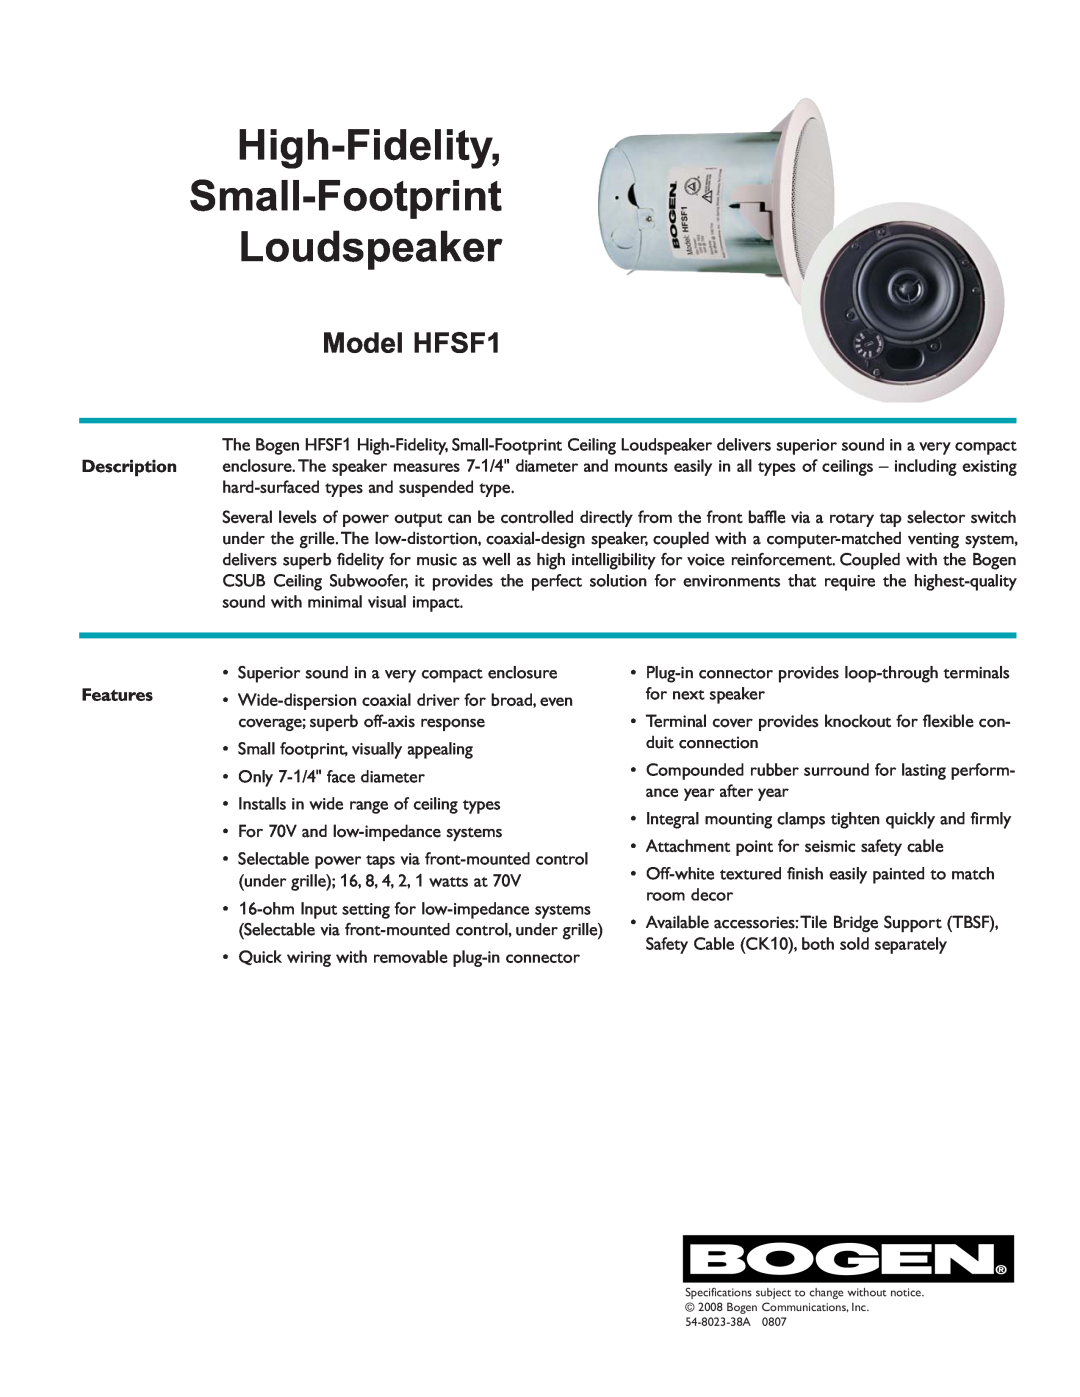 Bogen specifications High-Fidelity Small-Footprint Loudspeaker, Model HFSF1 